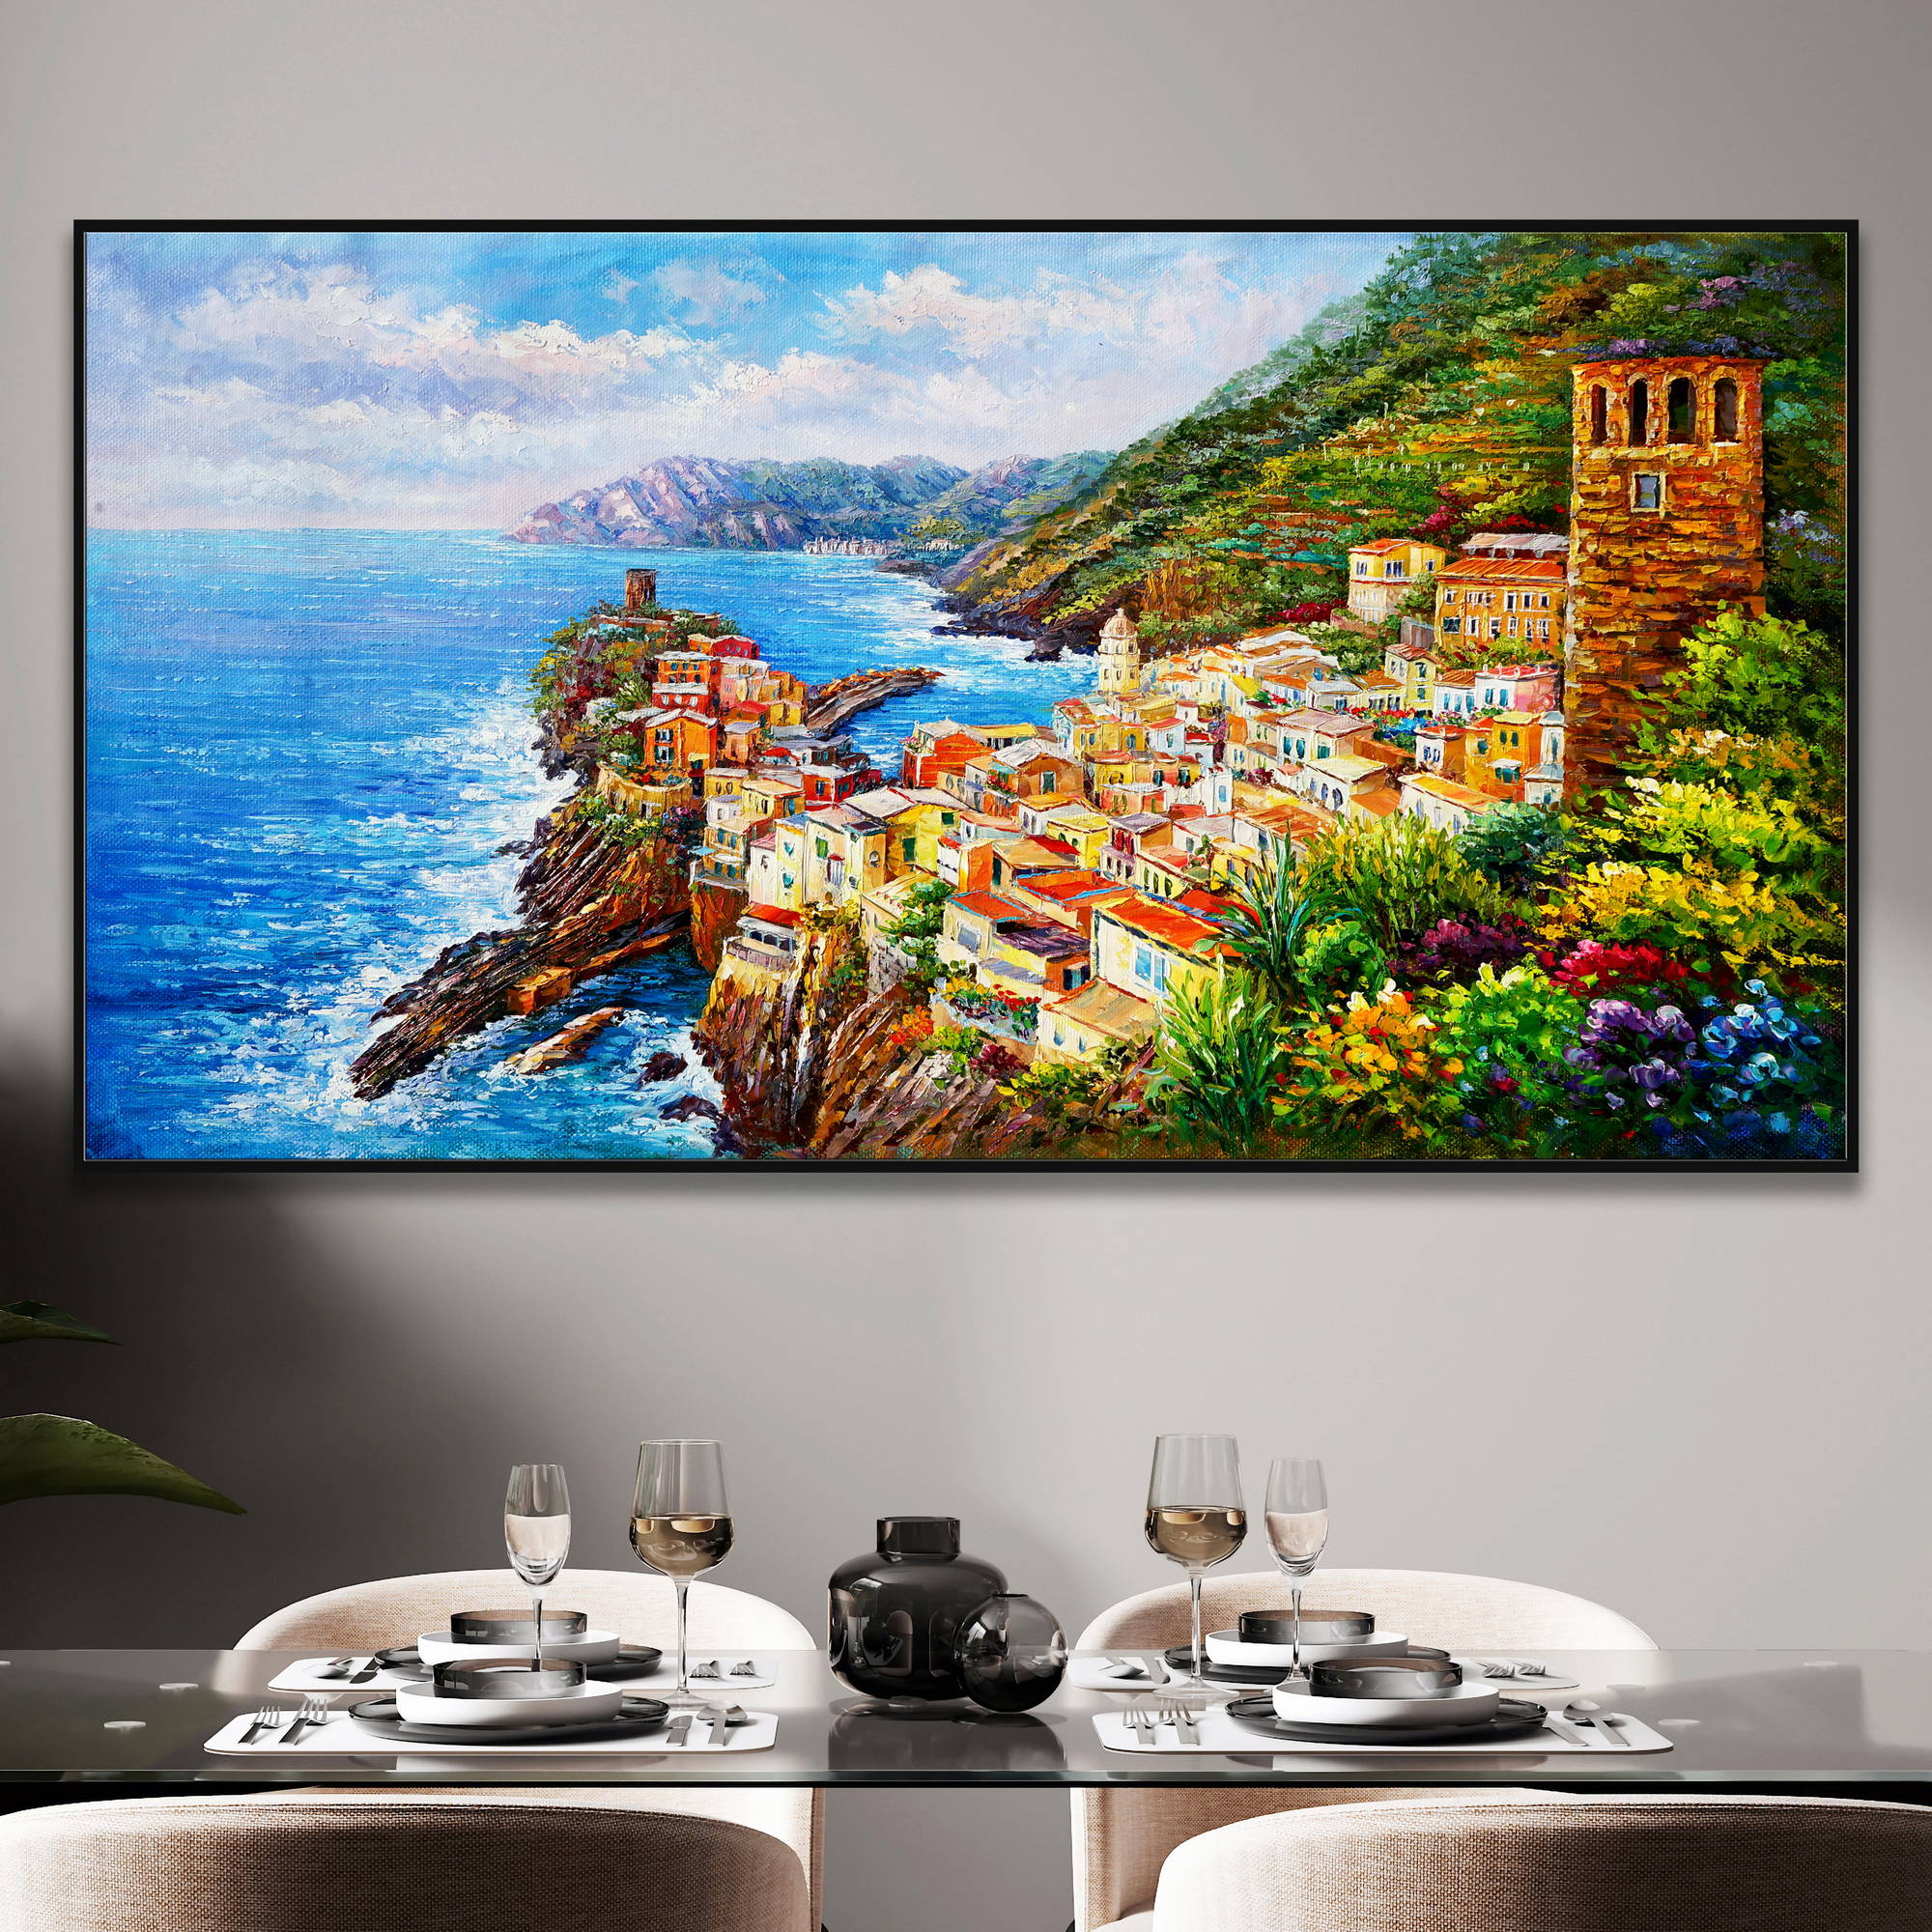 Dipinto di Vernazza nelle Cinque Terre con mare azzurro e vegetazione.